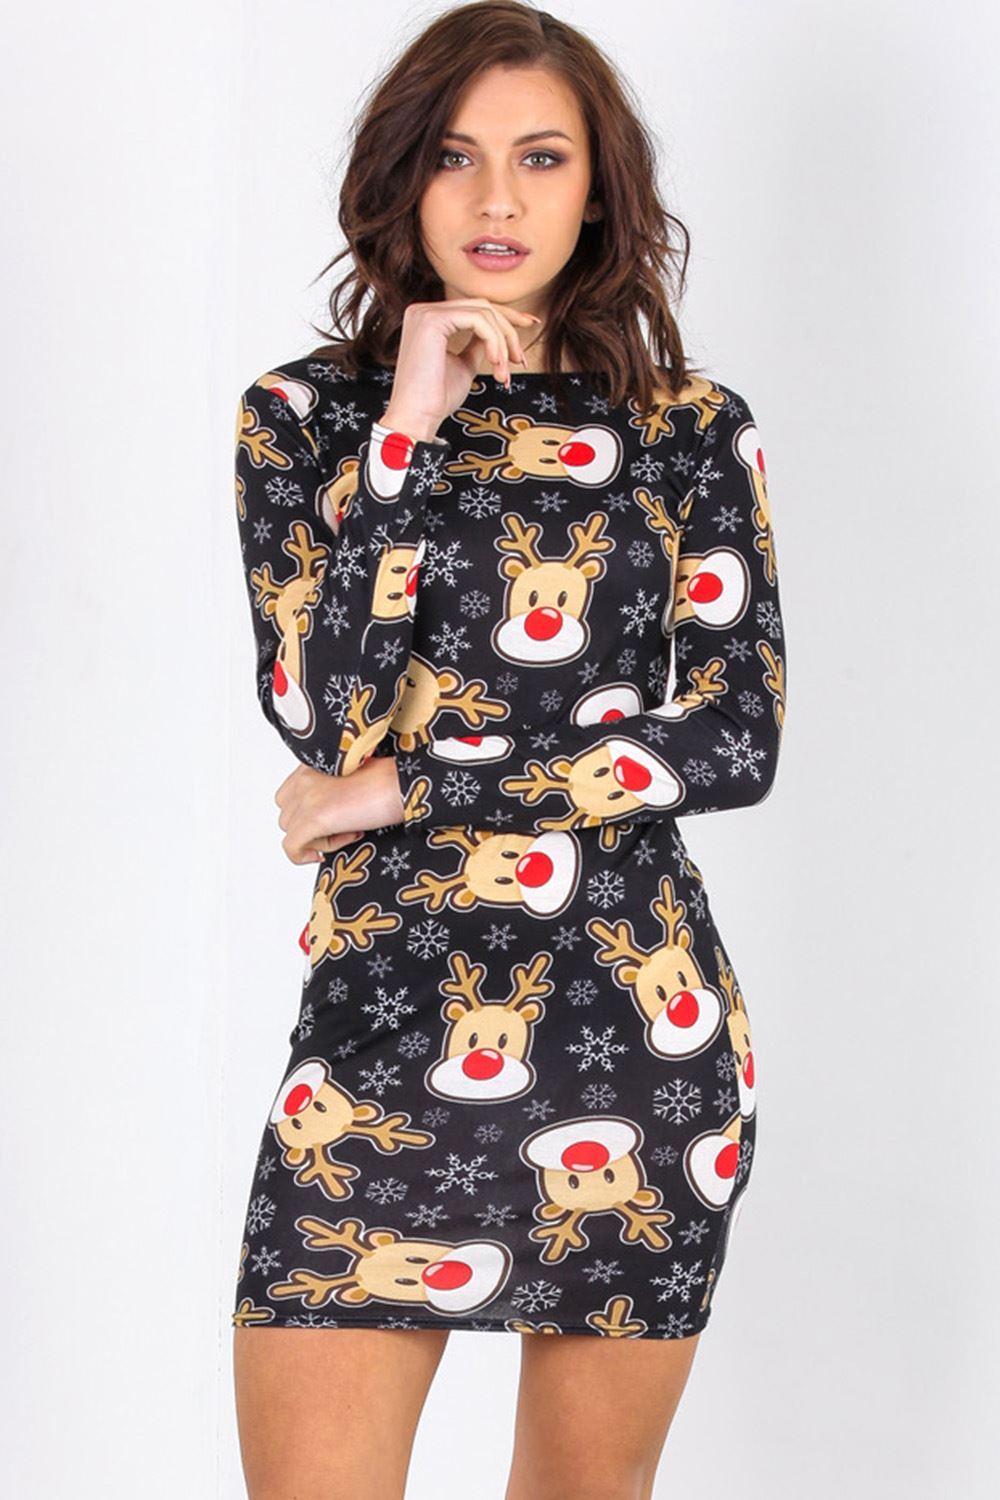 Evie Christmas Santa Rudolph Reindeer Bodycon Dress